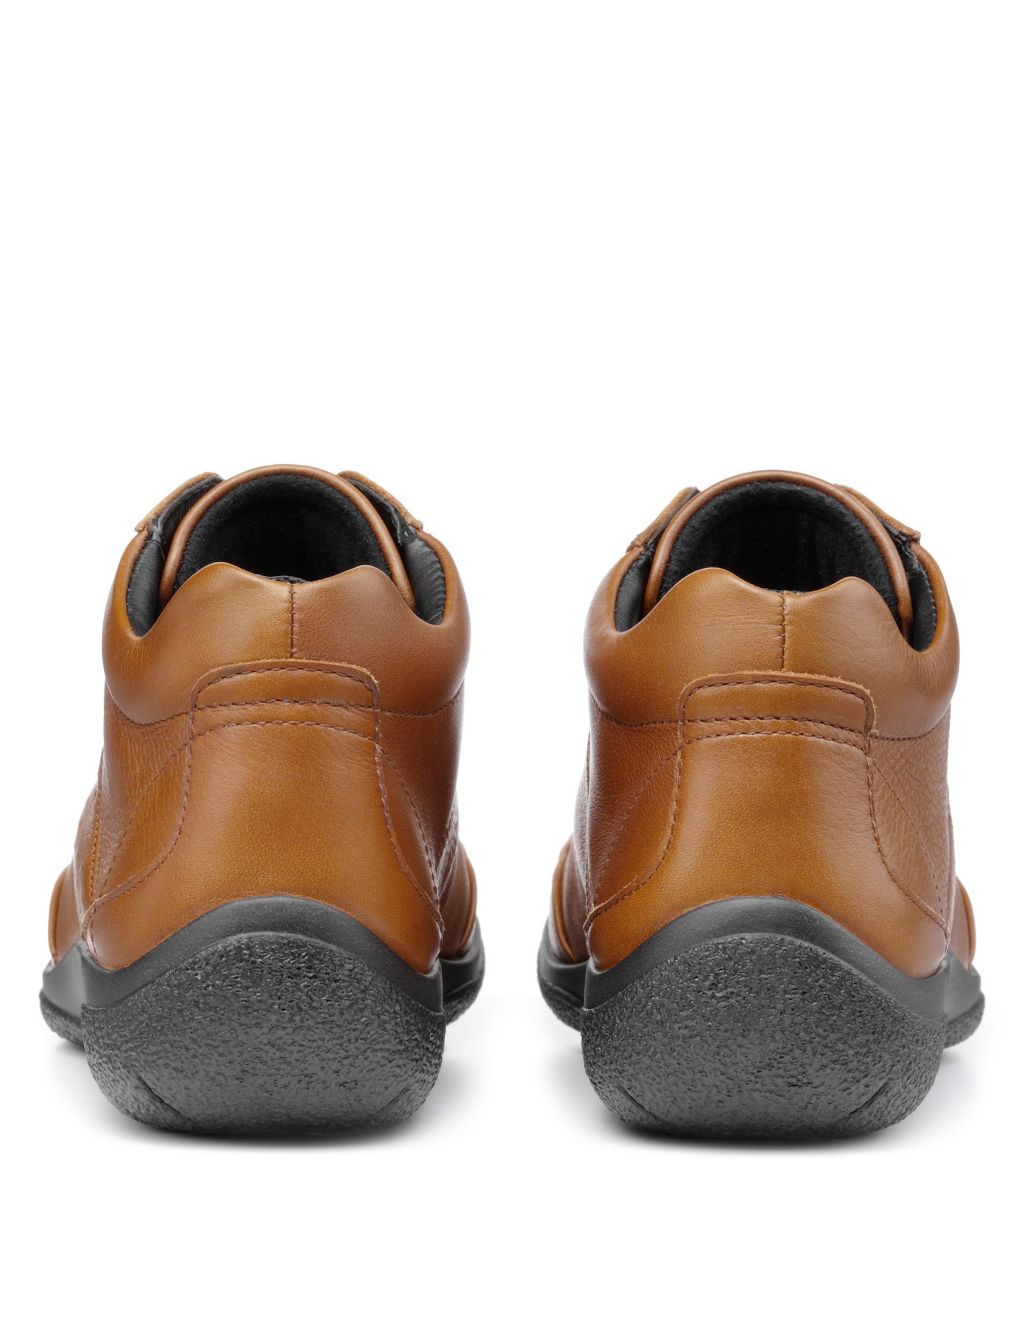 Ellery III Leather Flat Boots image 3